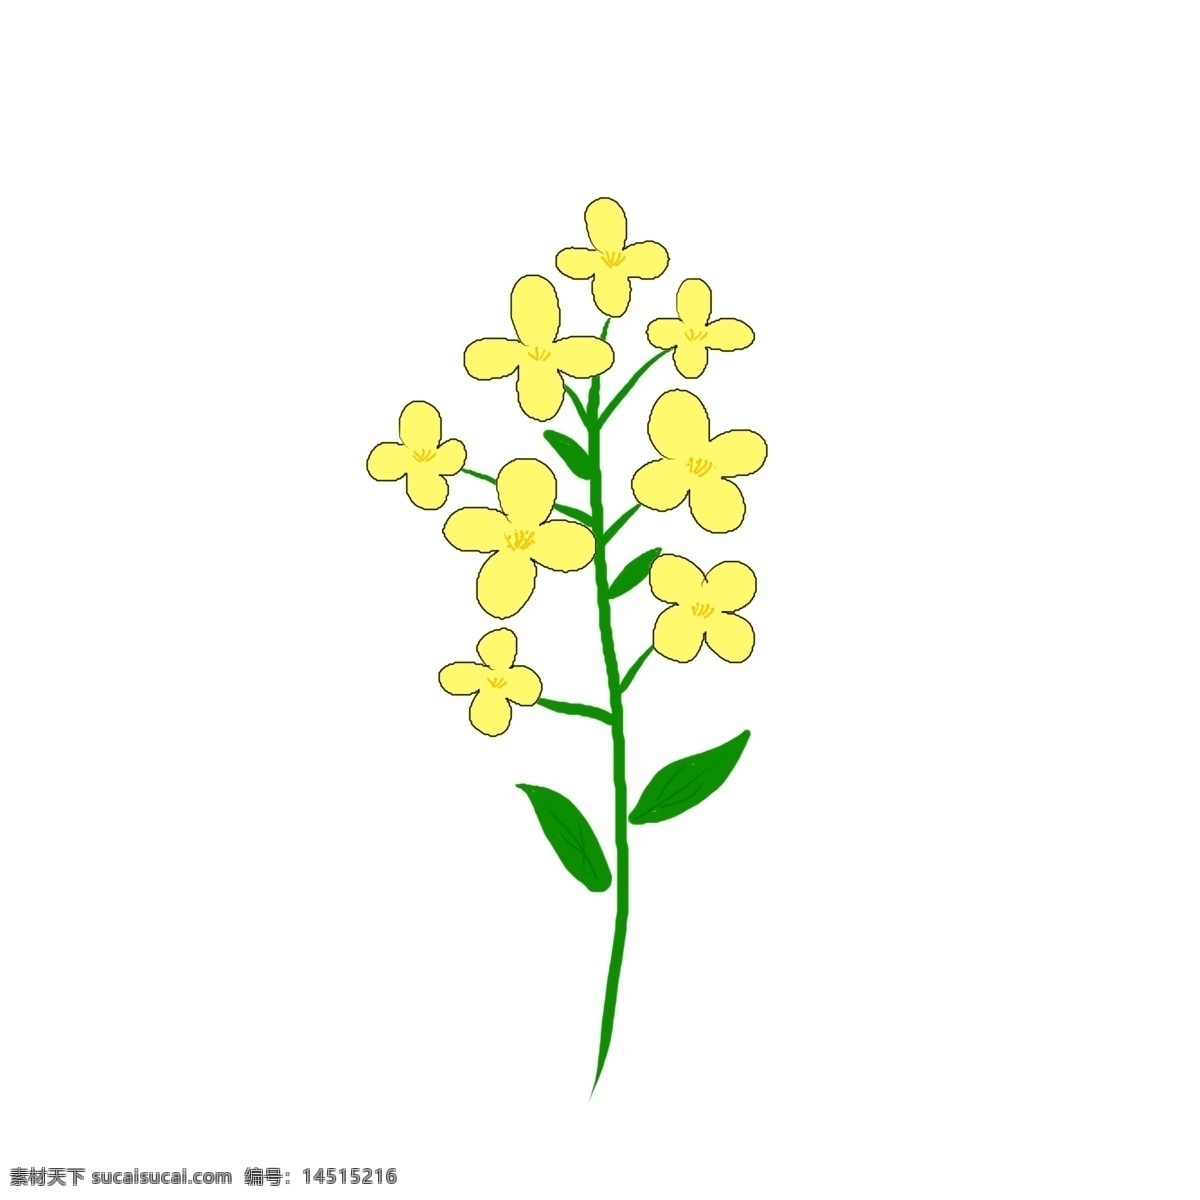 束 可爱 油菜花 一束 黄色的 花朵 枝干 绿色的 手绘的 卡通风格 叶子 开花的 免扣图